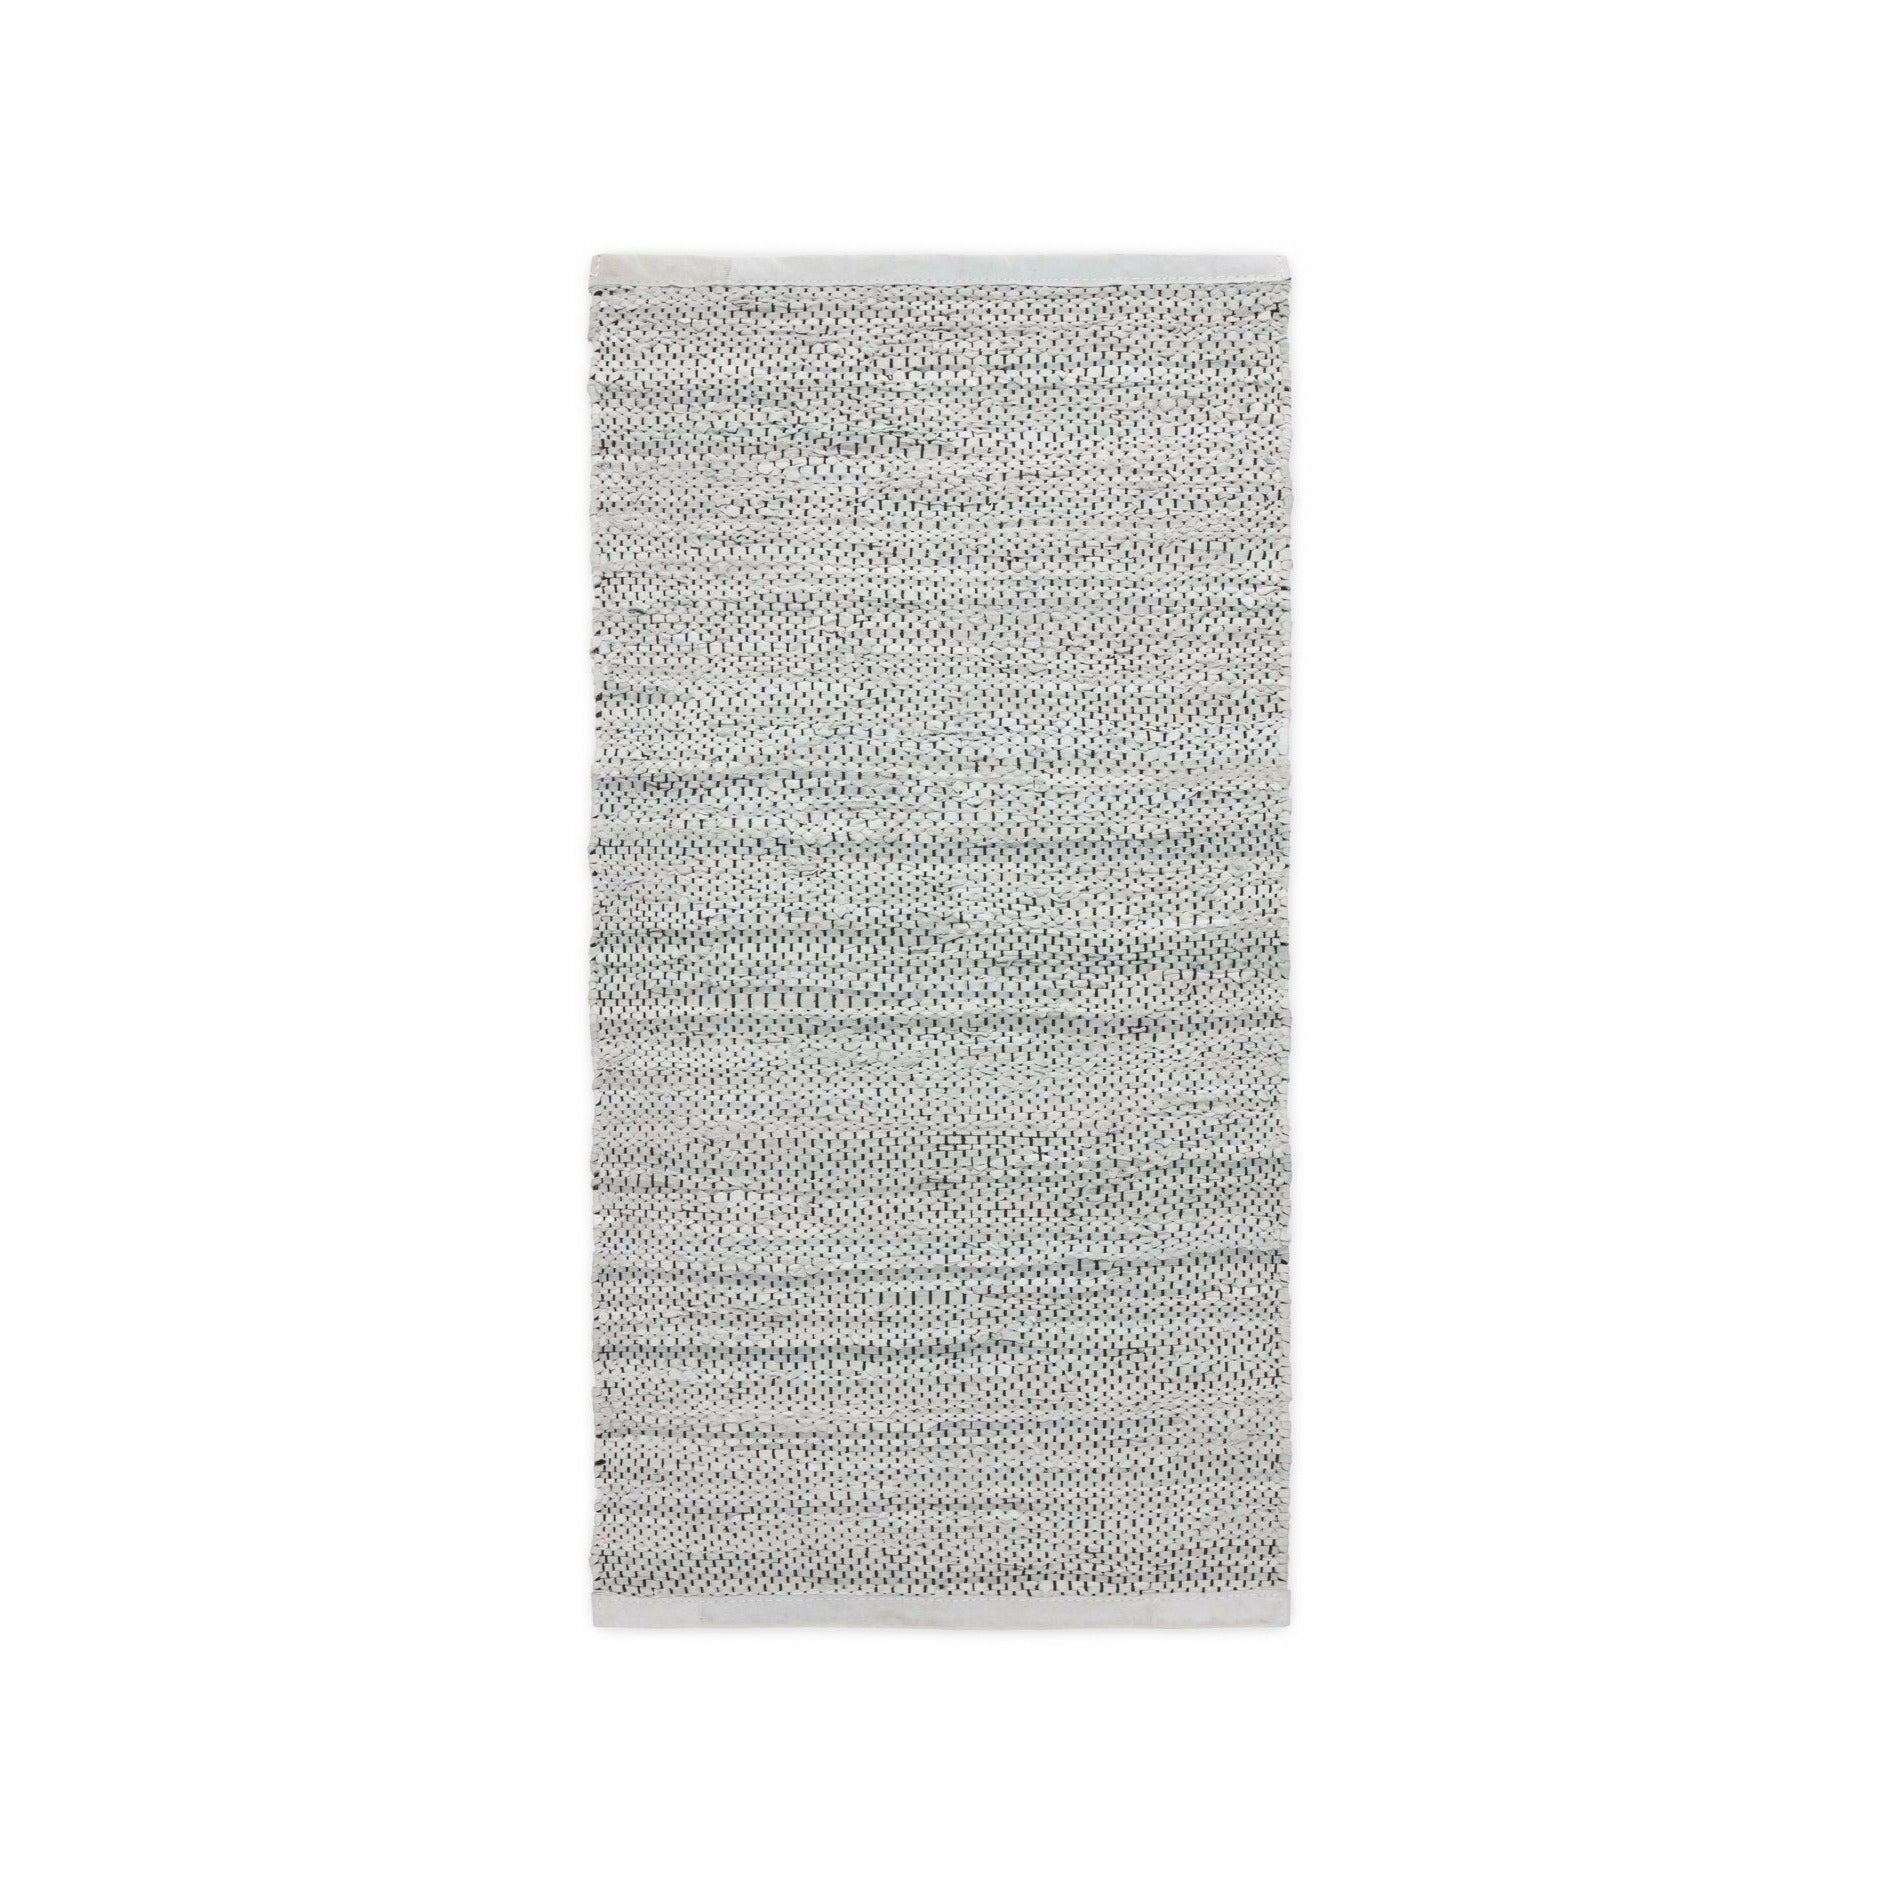 Tappeto in pelle solida grigio chiaro, 65 x 135 cm